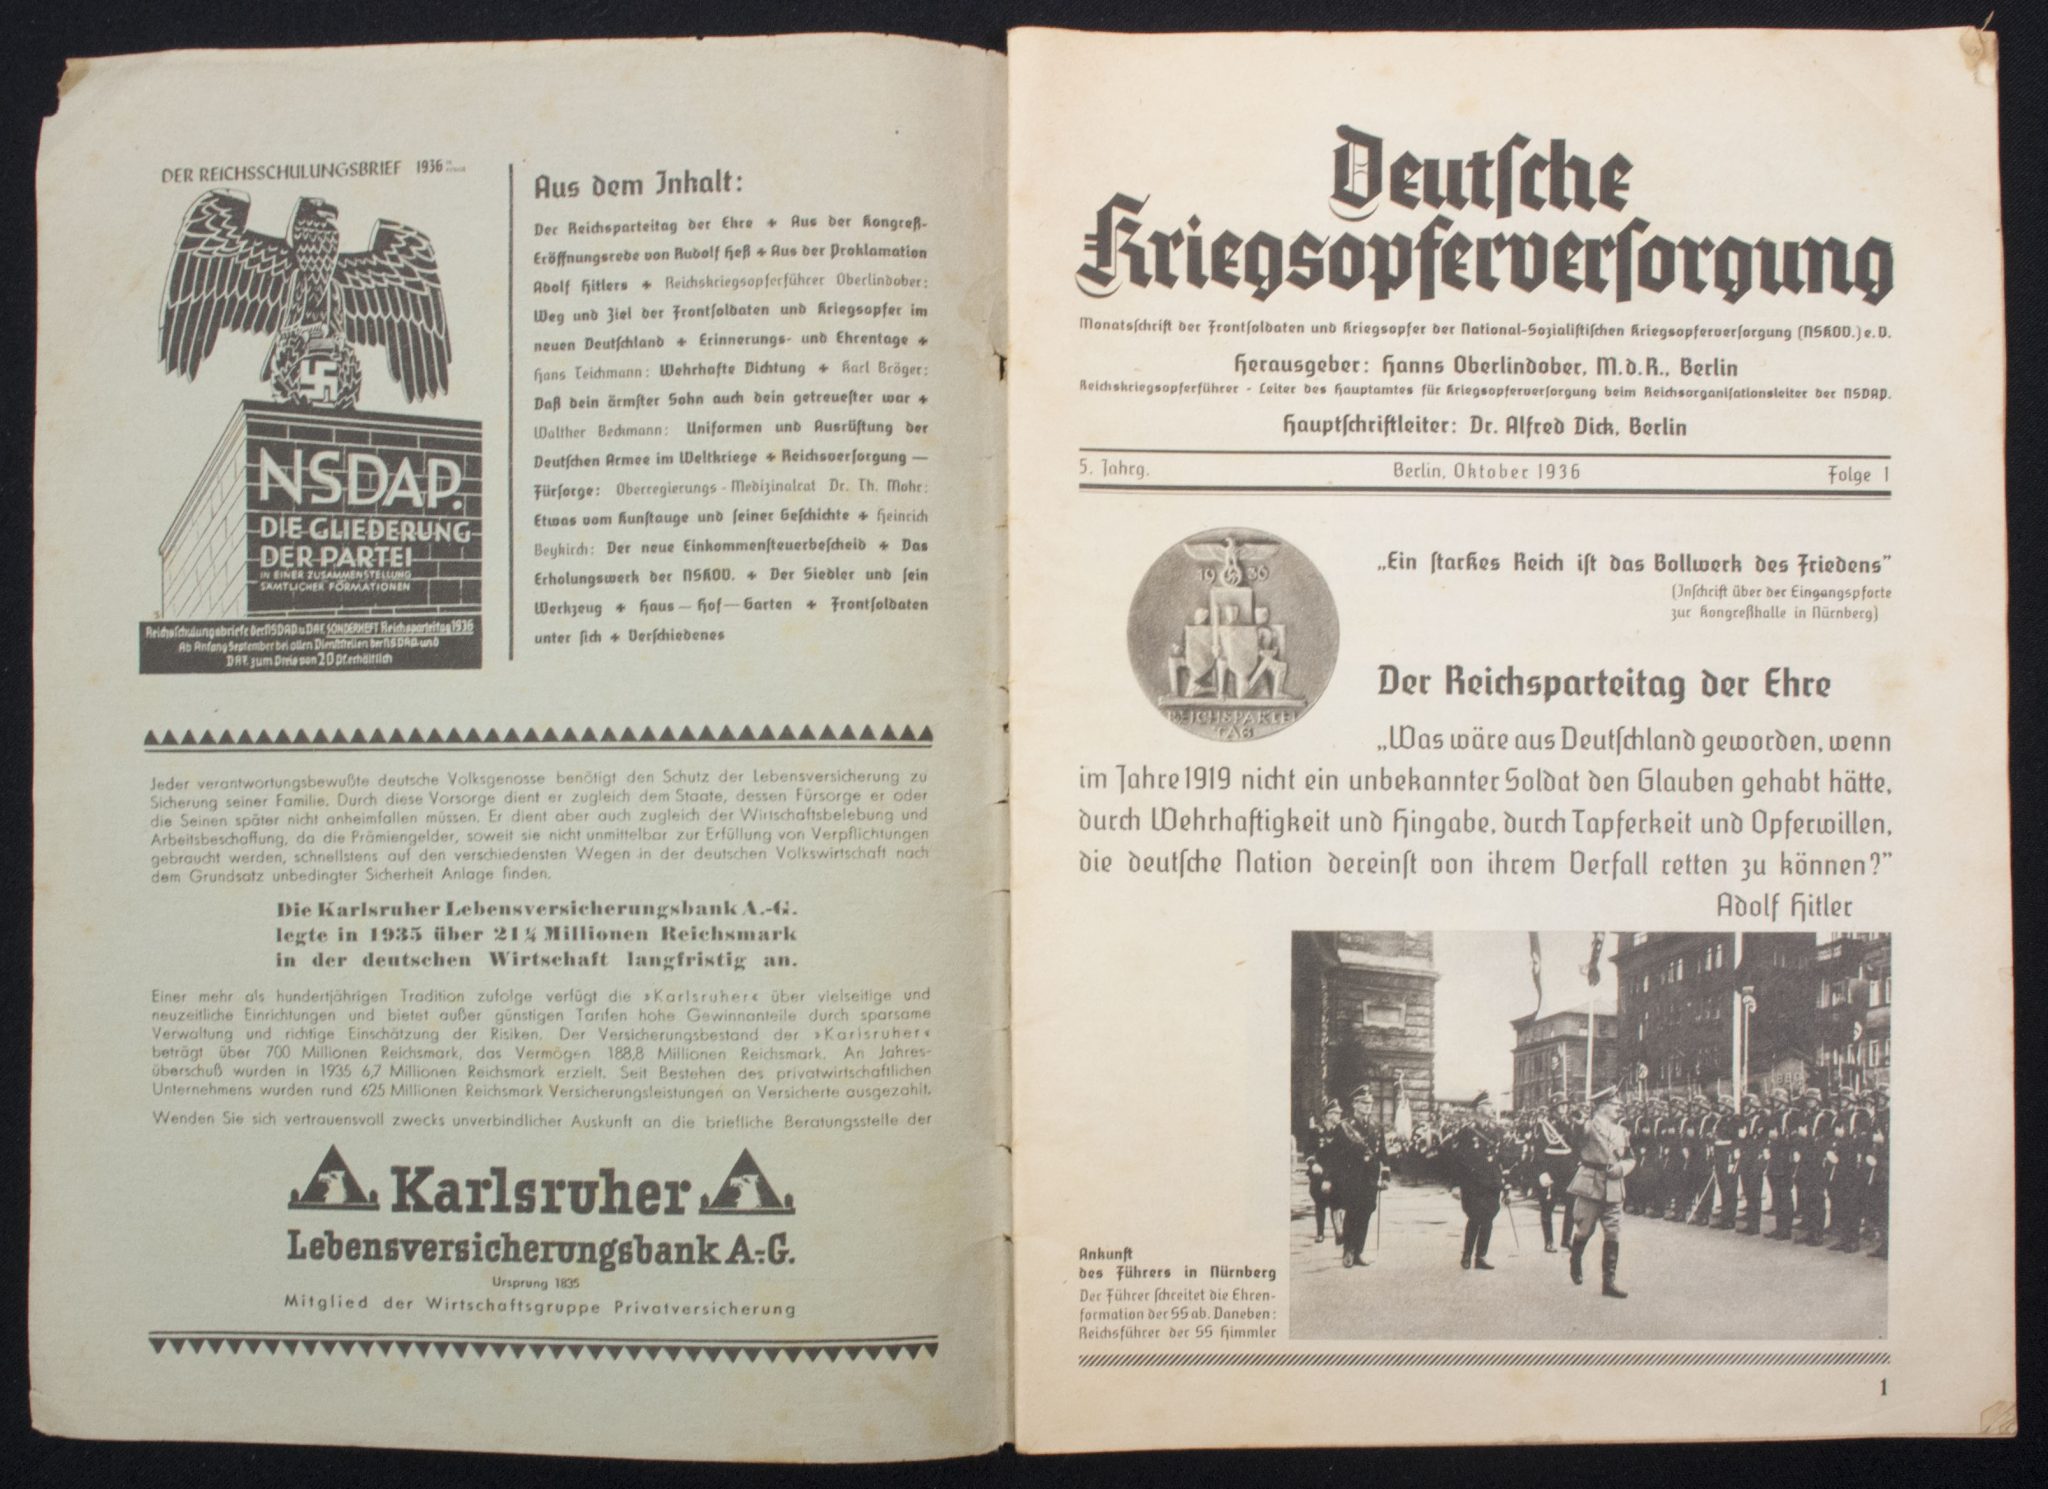 (Magazine) Deutsche Kriegsopferversorgung. 5. Jahrg. Berlin, Oktober 1936. Folge 1